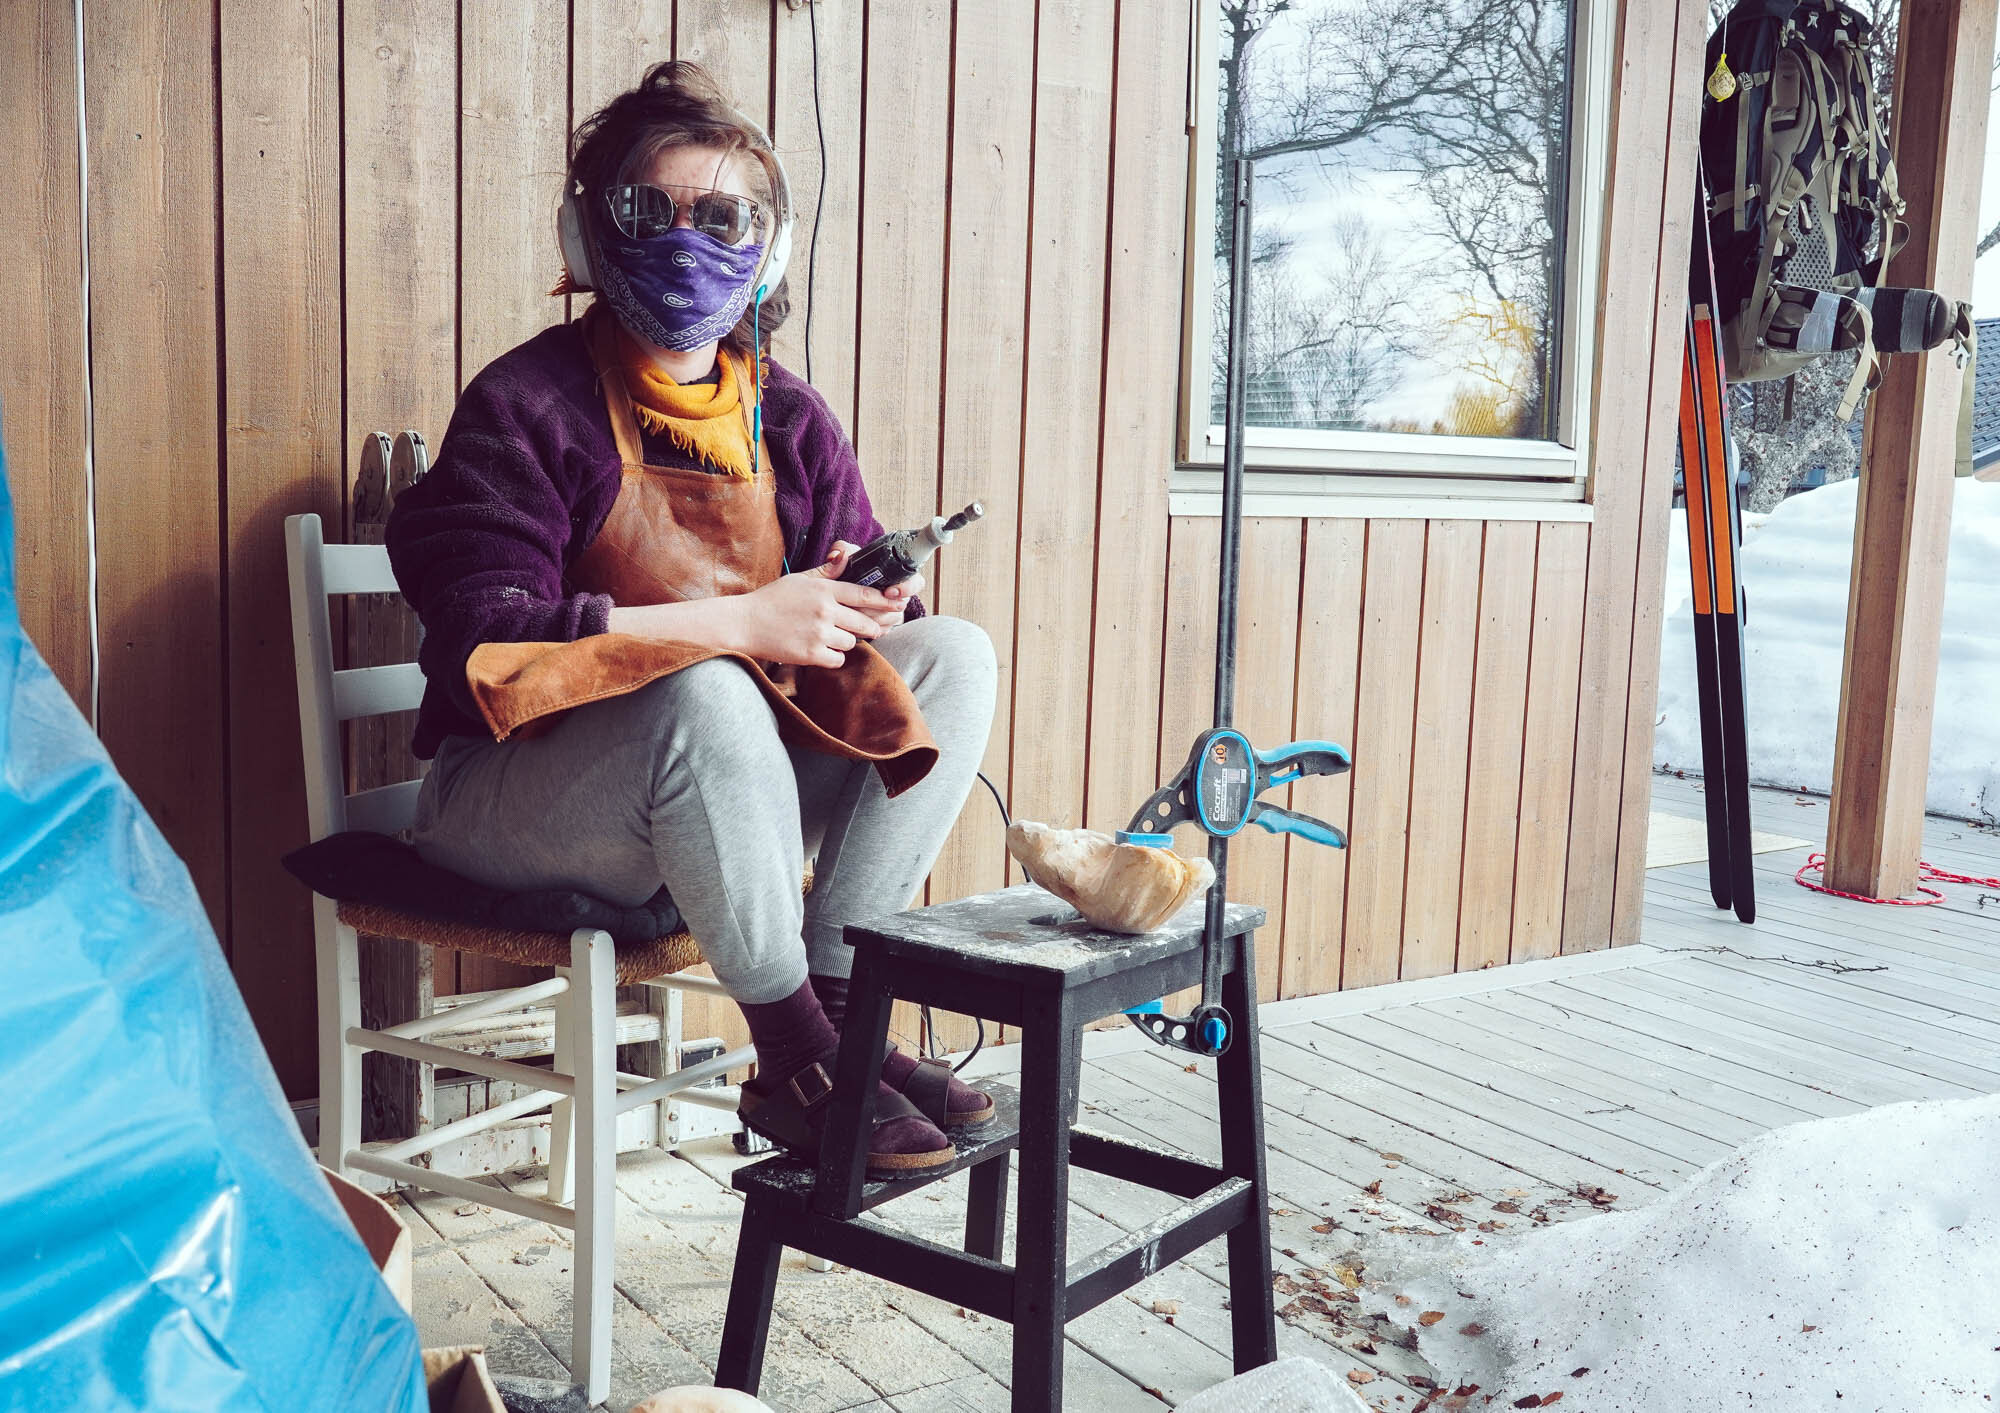  Den unge kunstneren Åsne Kummeneje Mellem utforsker kvensk håndverk, käsityö, i arbeidet sitt. Foto: Privat/Åsne Kummeneje Mellem 